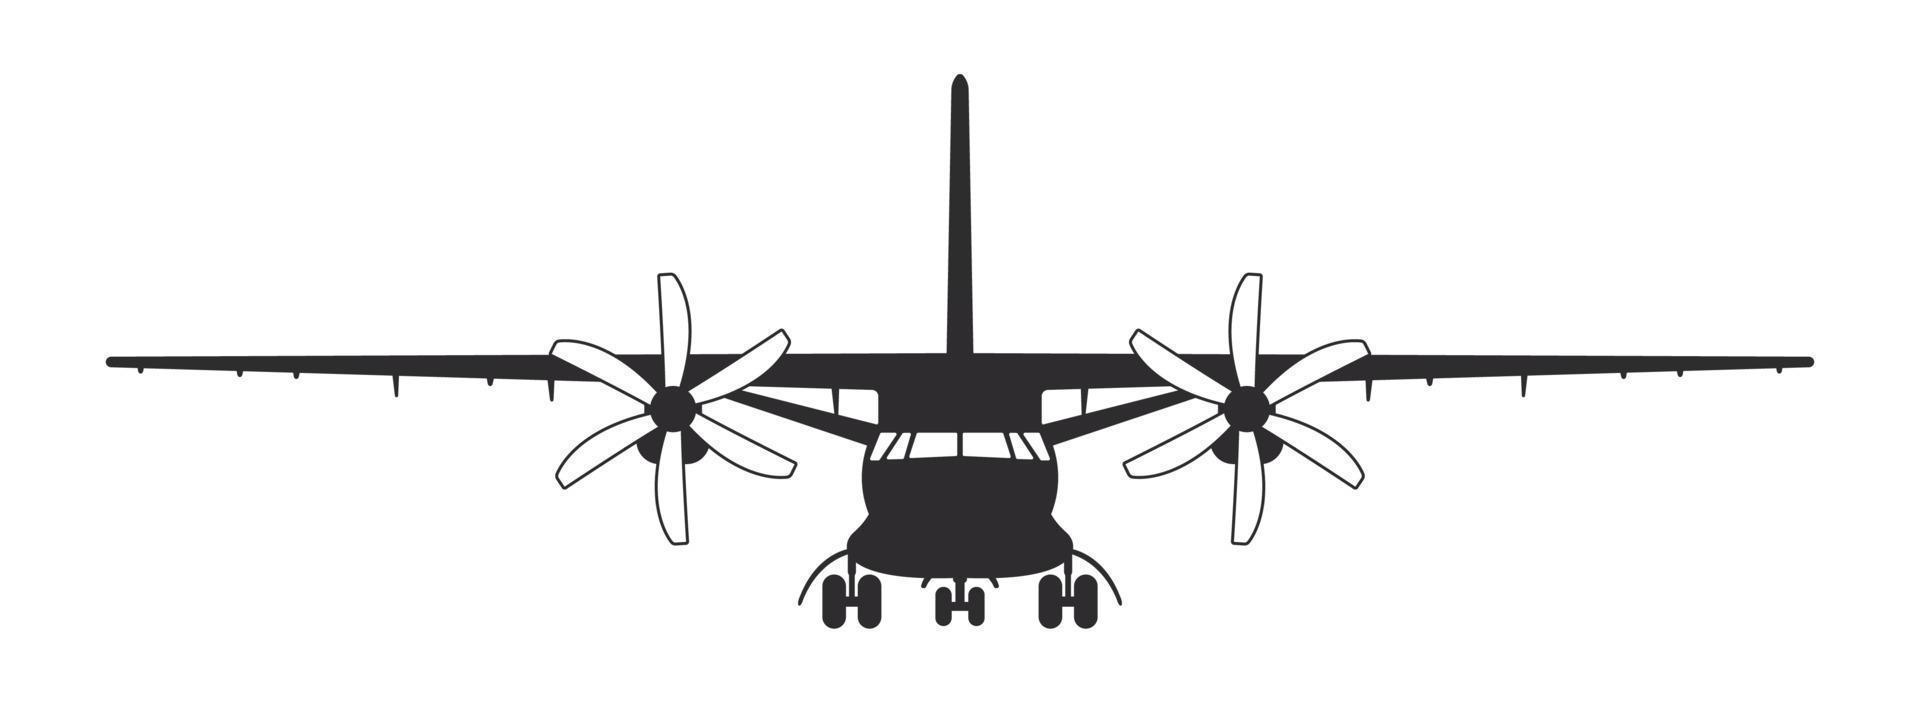 avion. avion cargo à hélice. vue de face de silhouette d'avion. image vectorielle vecteur